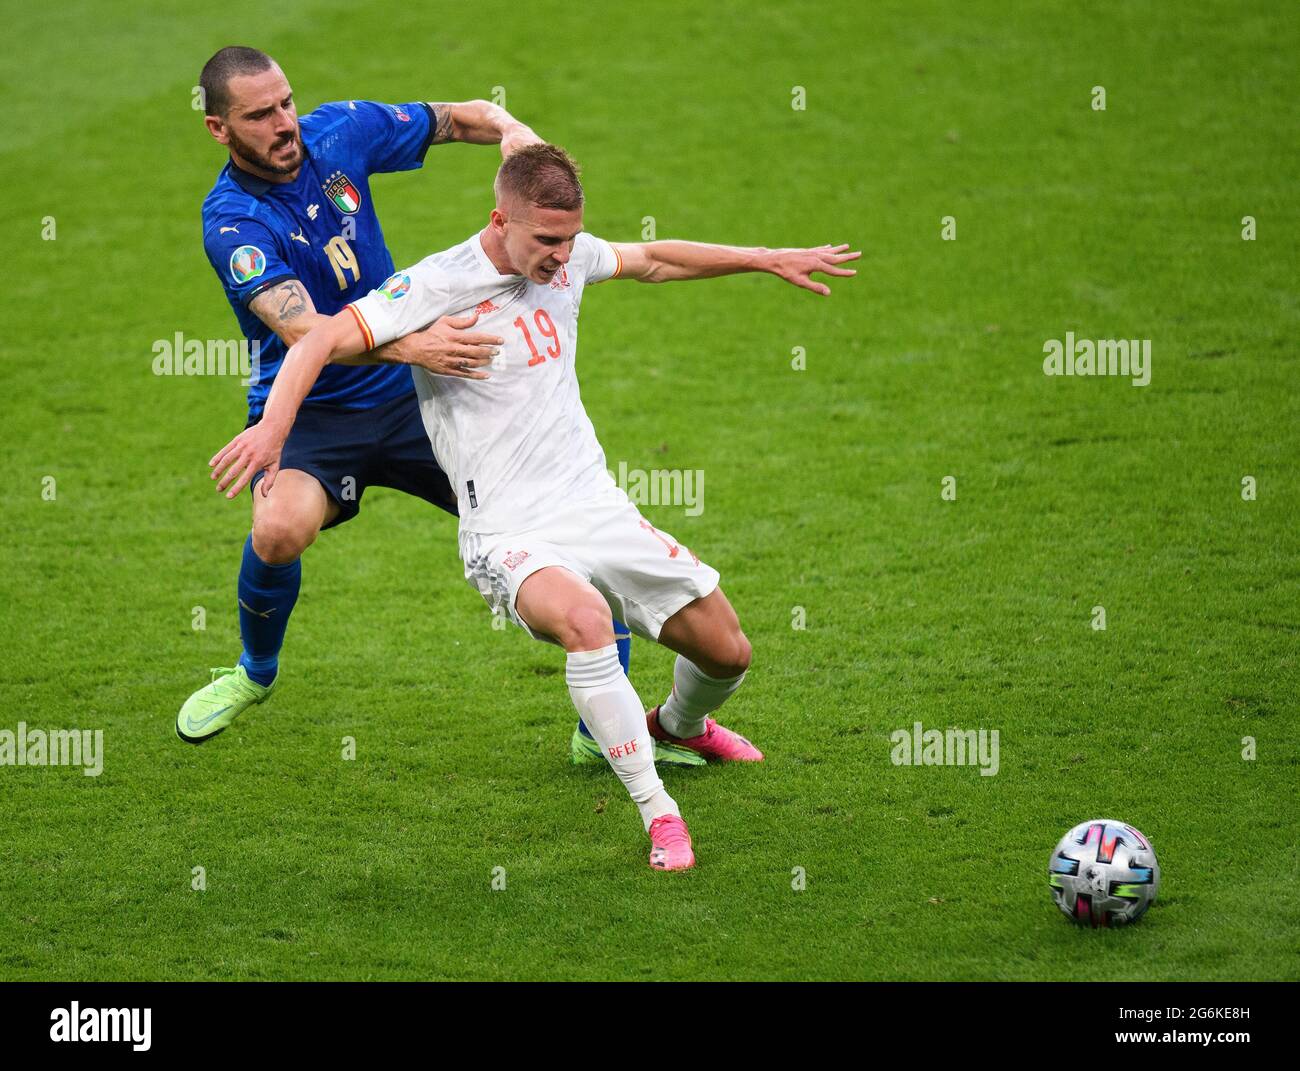 07 juillet 2021 - Italie / Espagne - UEFA Euro 2020 semi-finale - Wembley - Londres Leonardo Bonucci s'attaque à Dani Olmo crédit photo : © Mark pain / Alamy Live News Banque D'Images